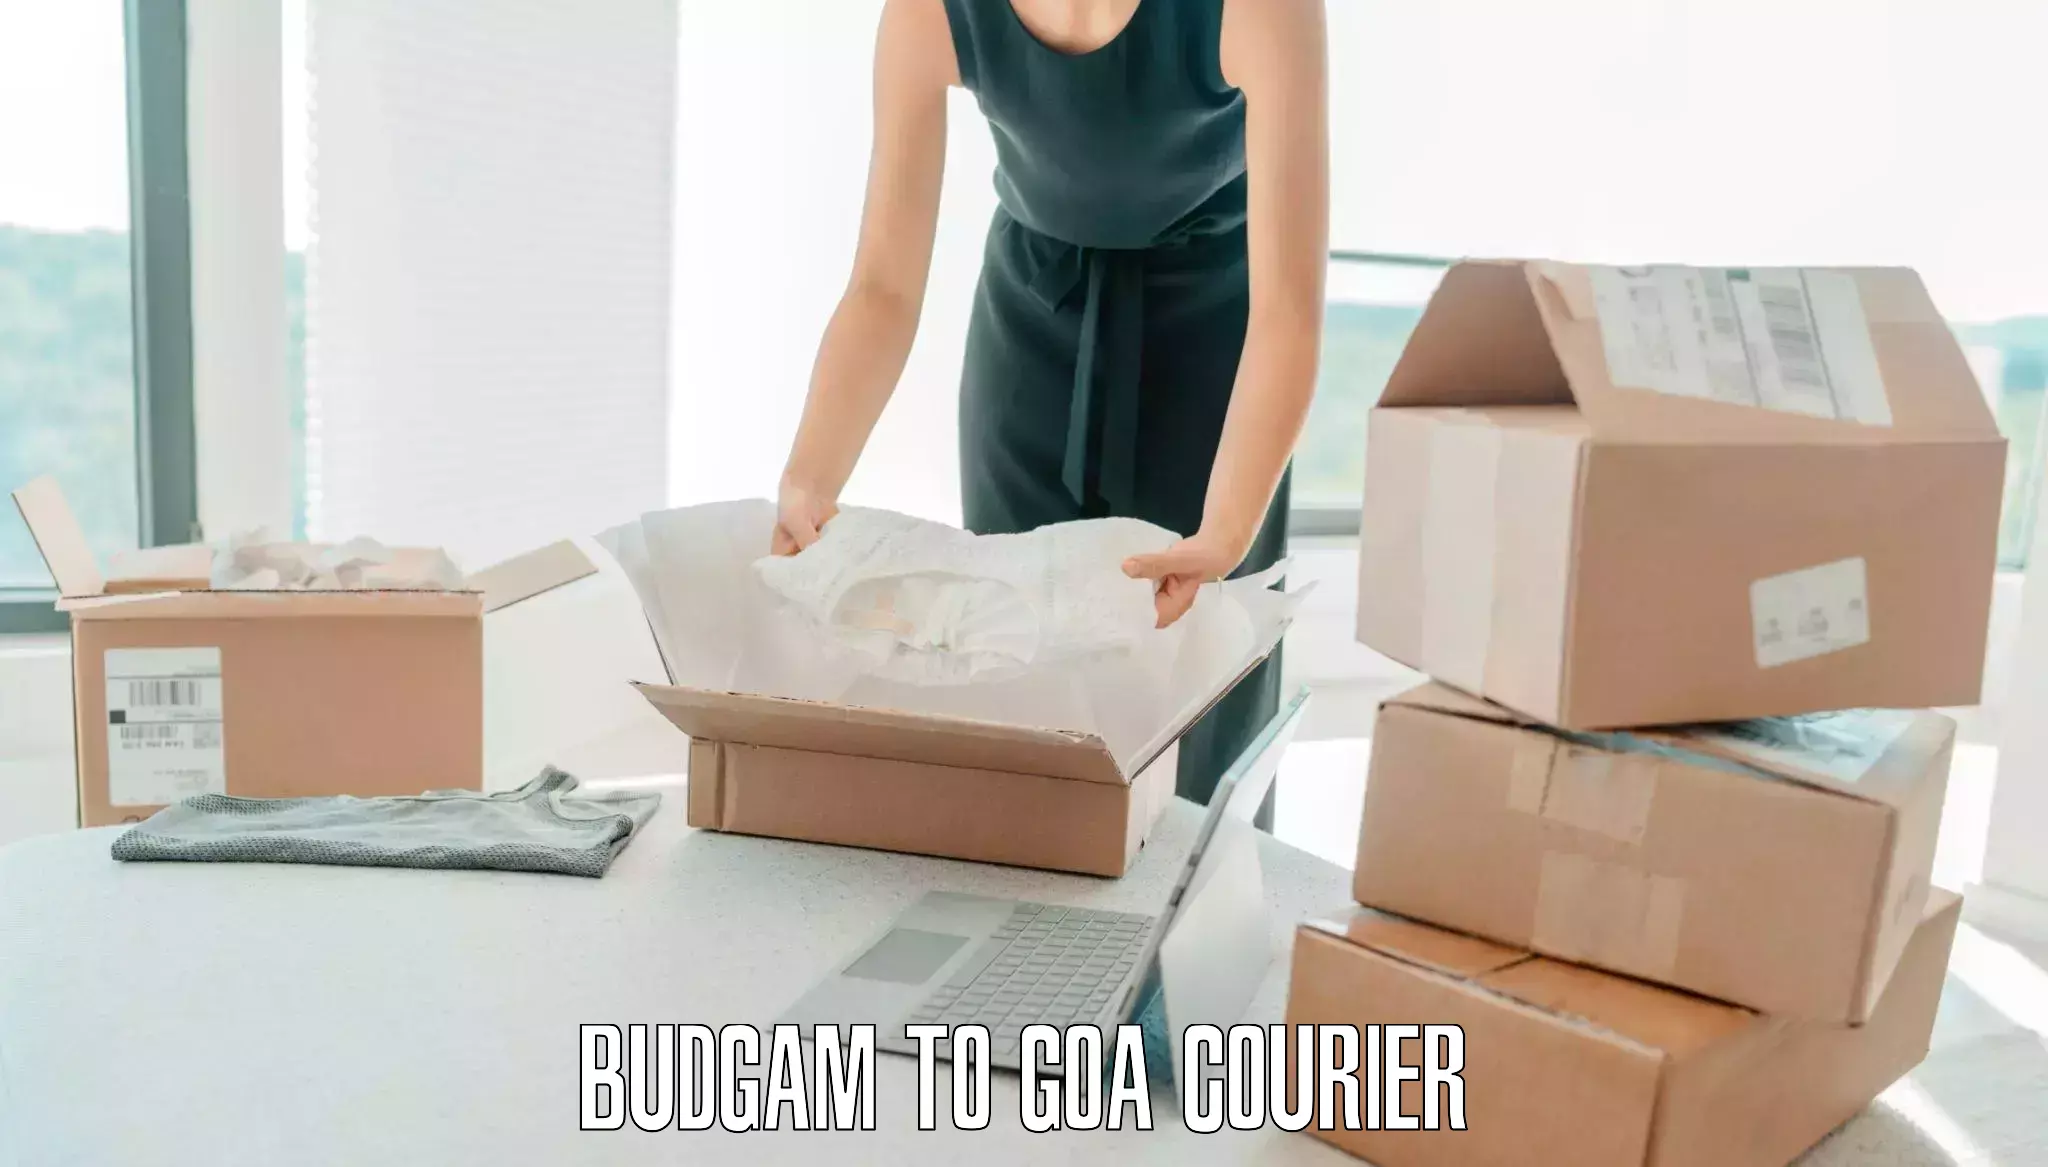 Luggage transit service Budgam to Goa University